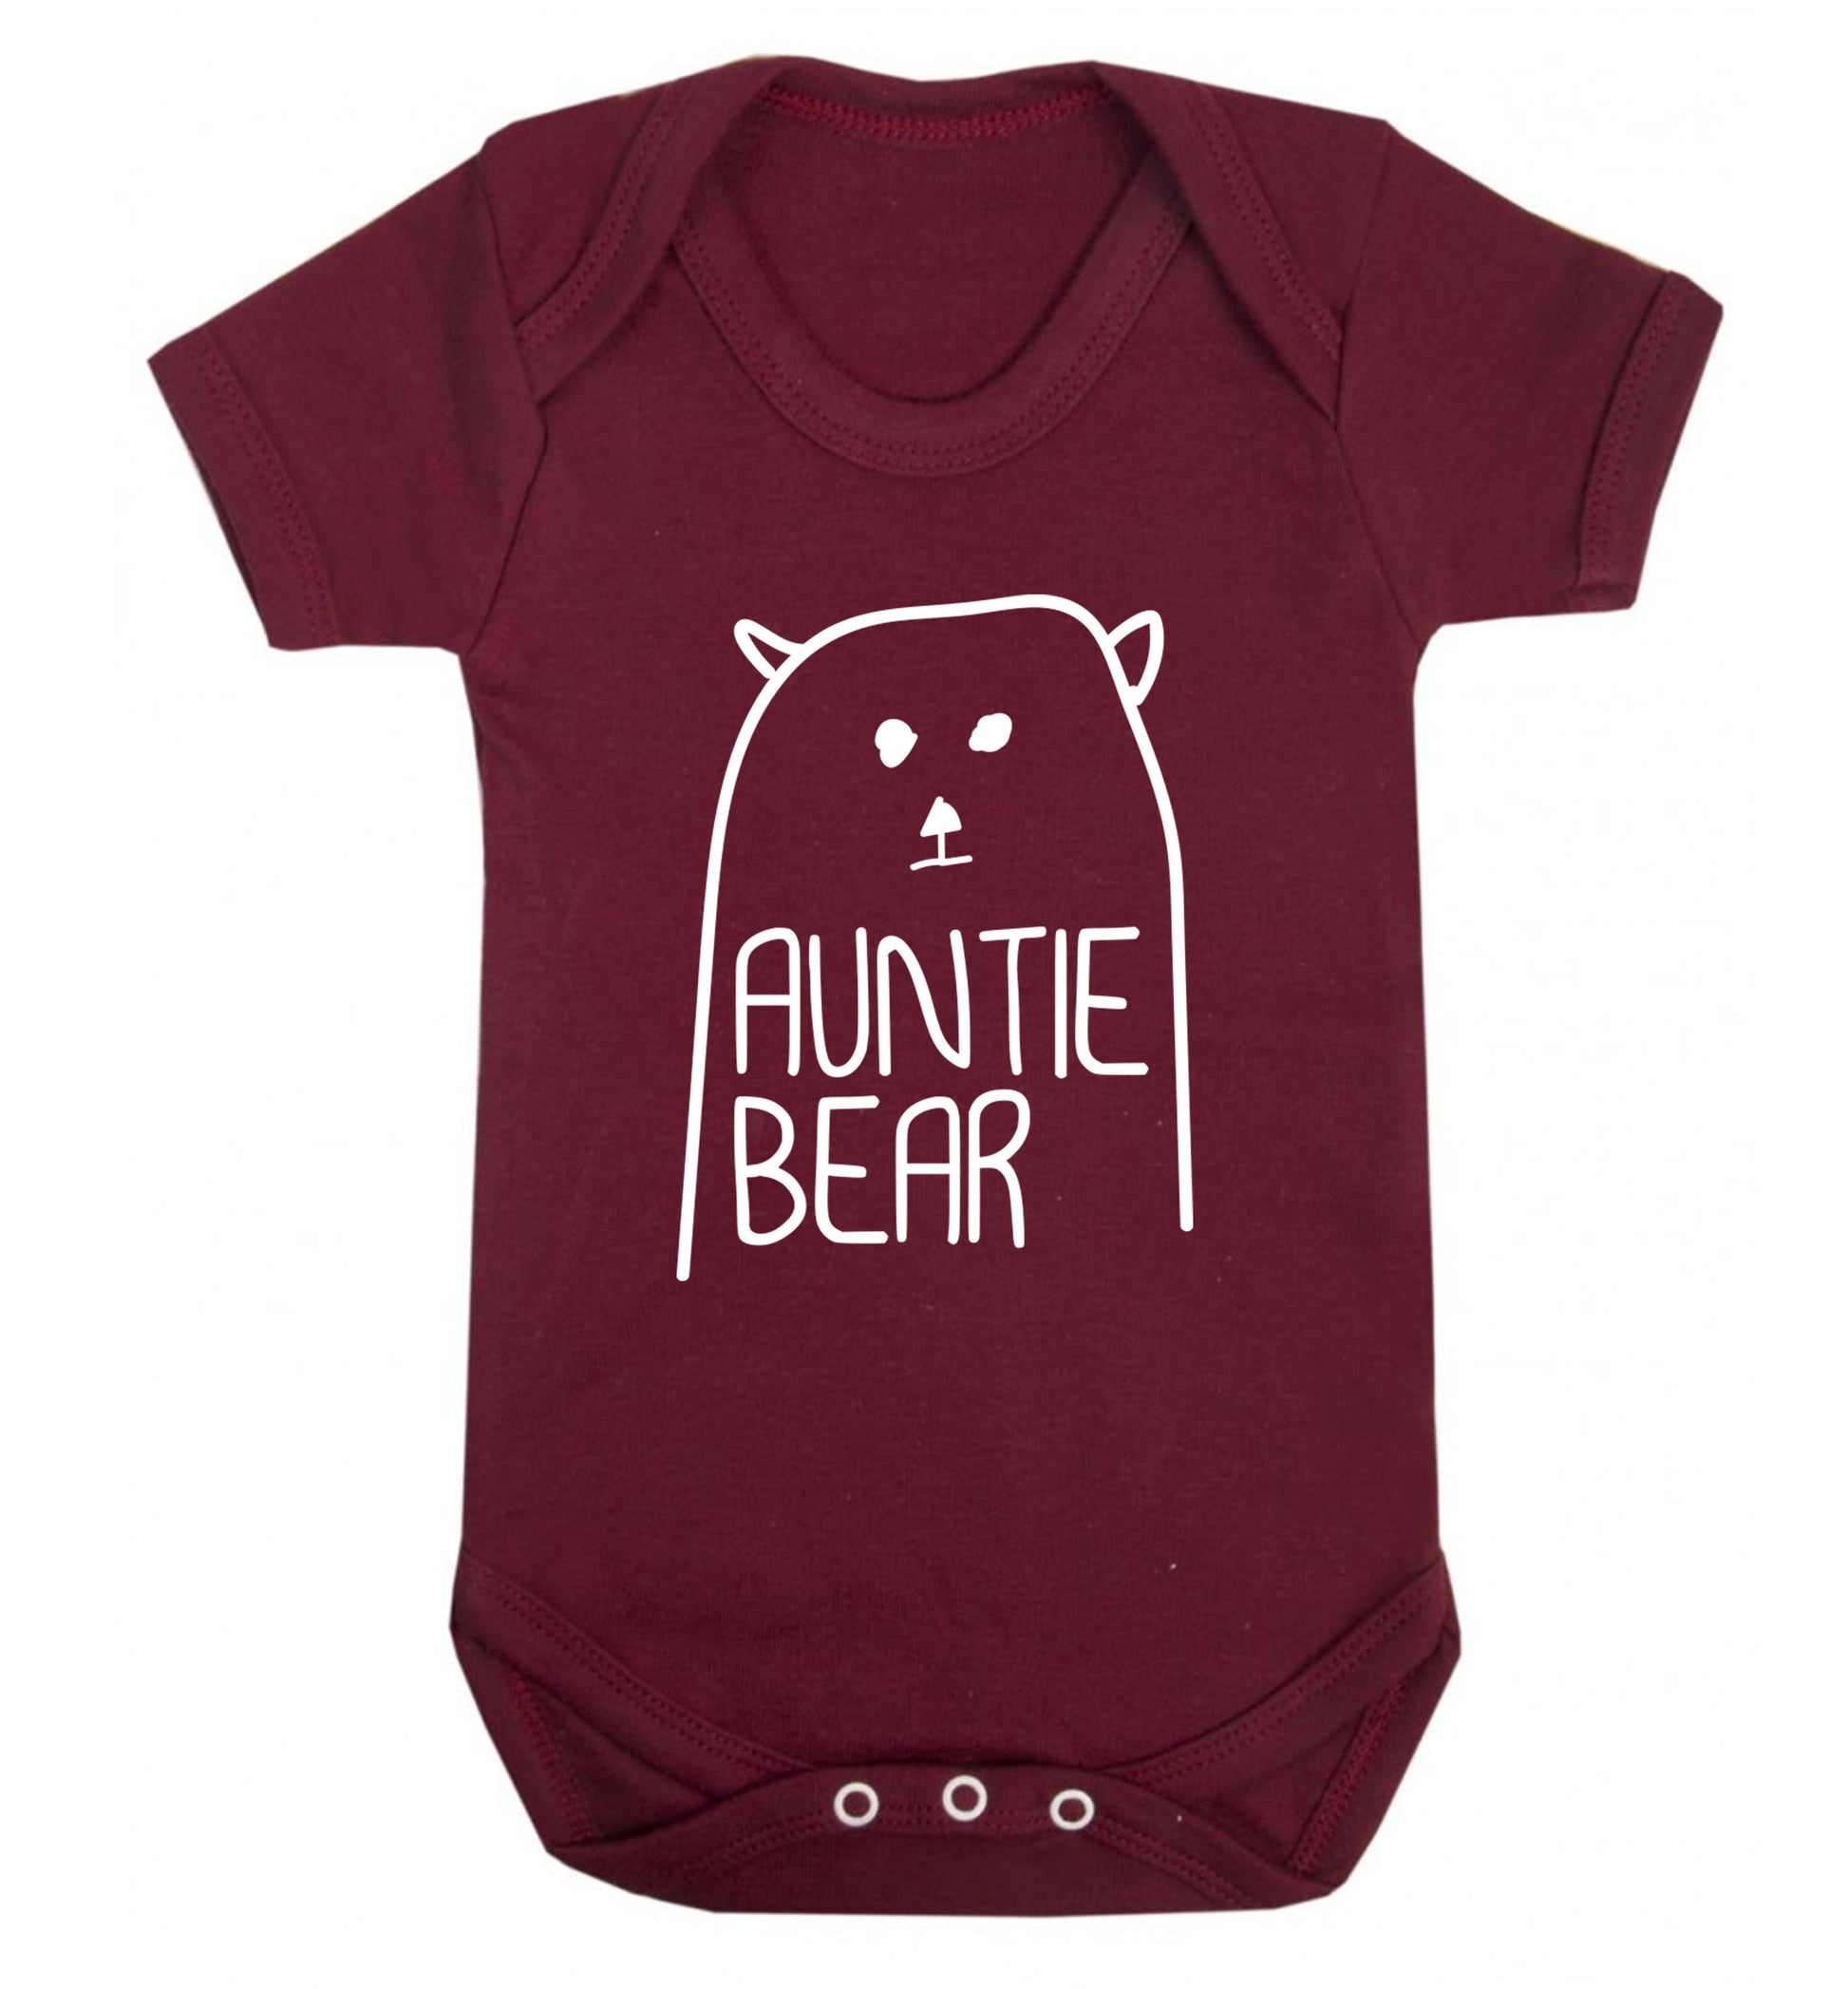 Auntie bear Baby Vest maroon 18-24 months